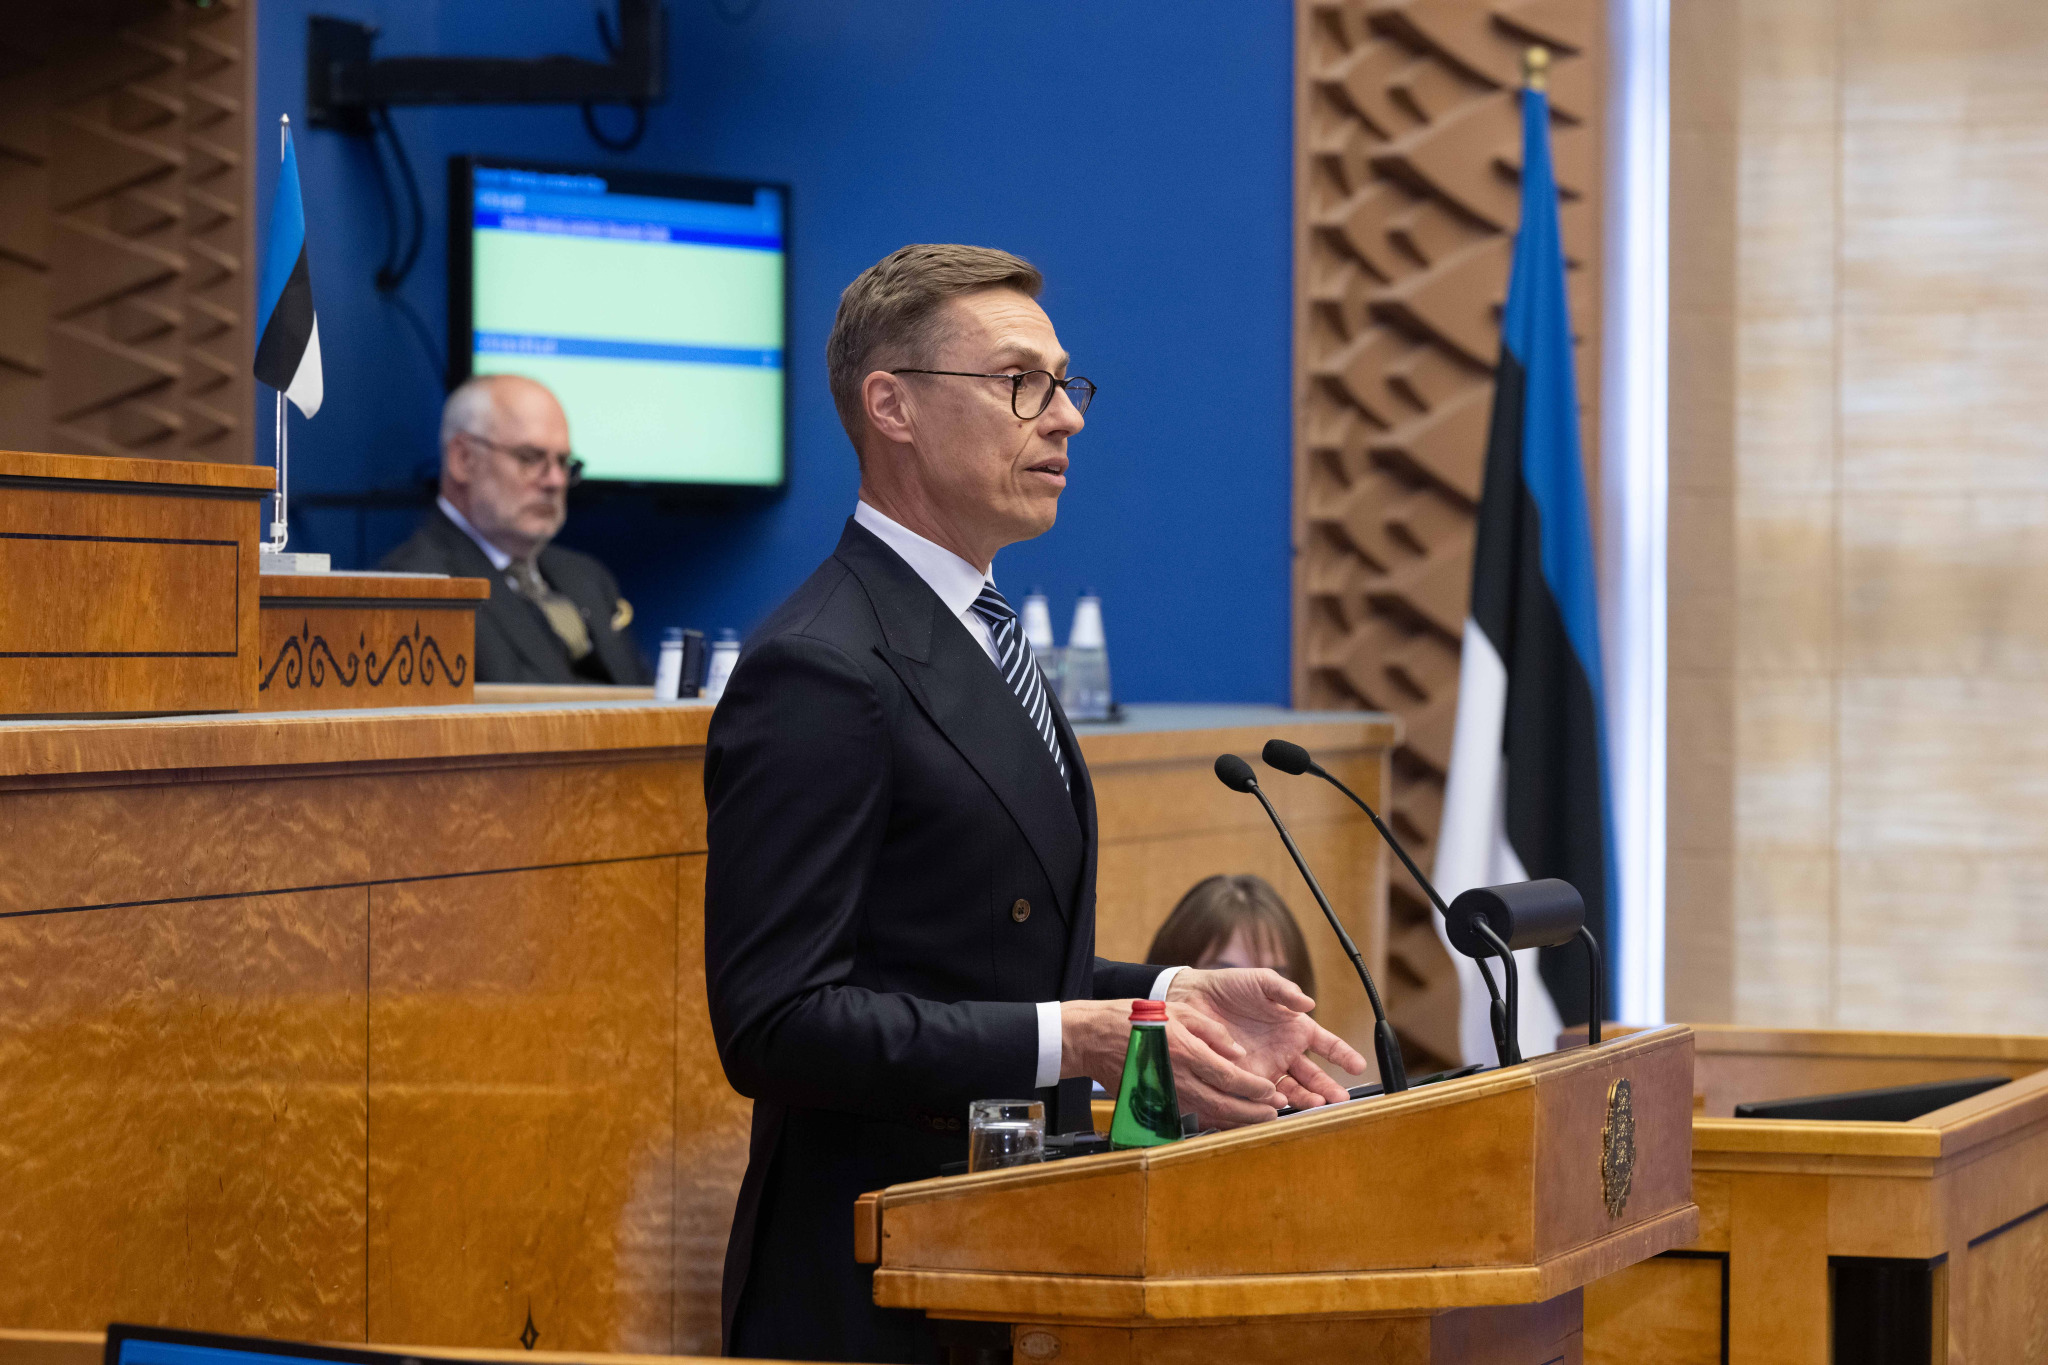 Soome president Riigikogus: me toetame, hoiame ja kaitseme üksteist